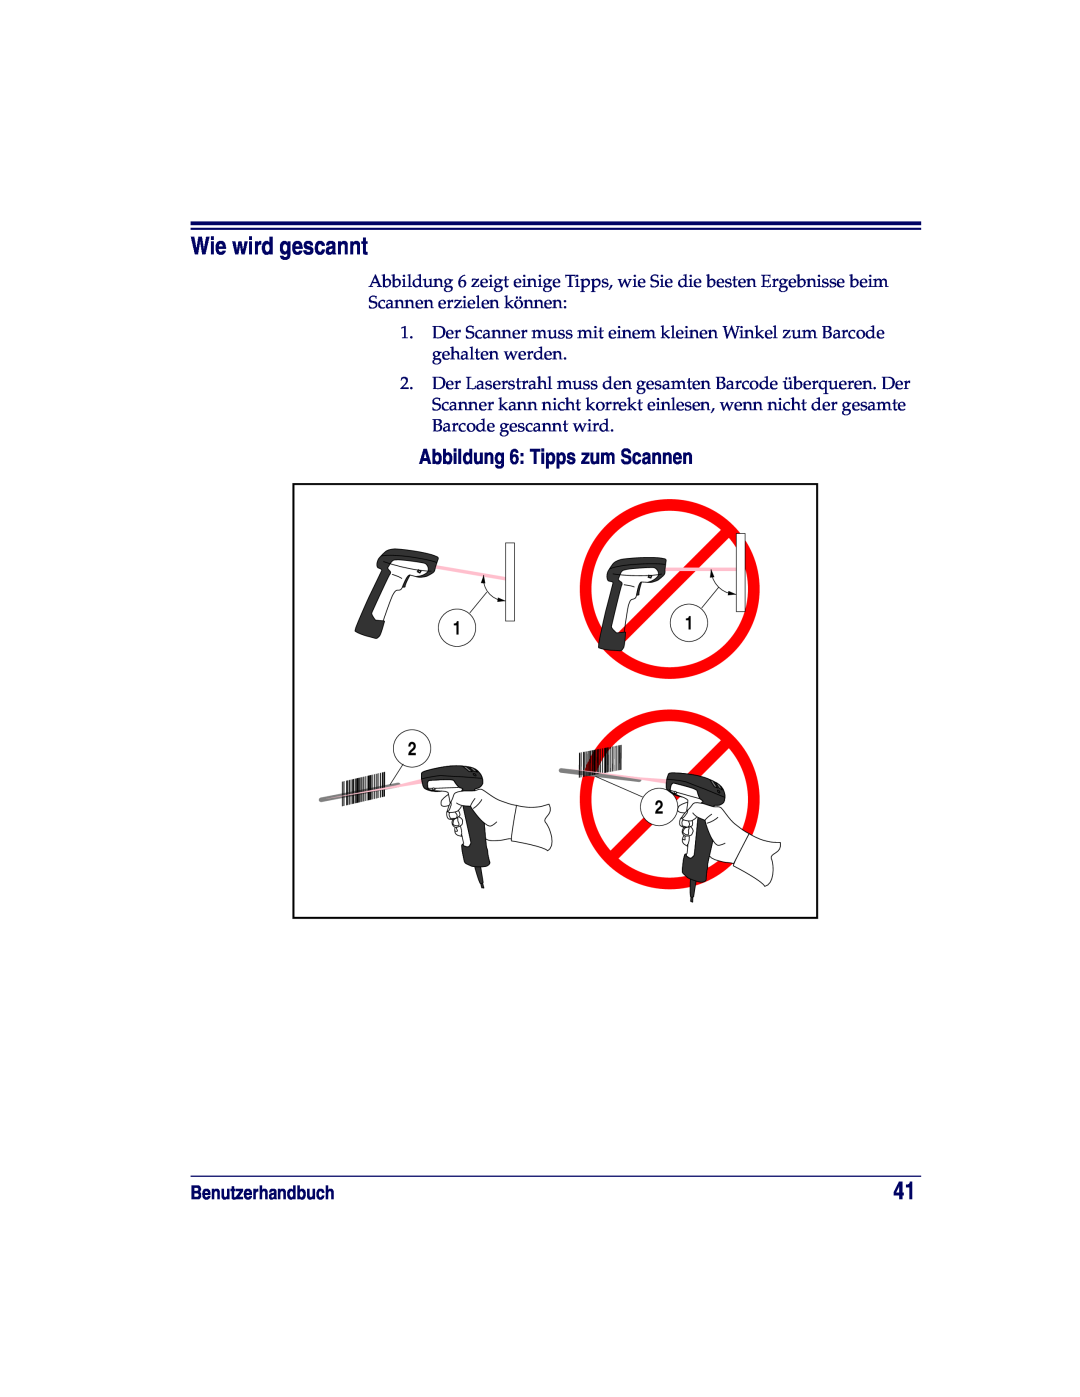 Datalogic Scanning XLR, SR, HD manual Wie wird gescannt, Abbildung 6 Tipps zum Scannen, Benutzerhandbuch 